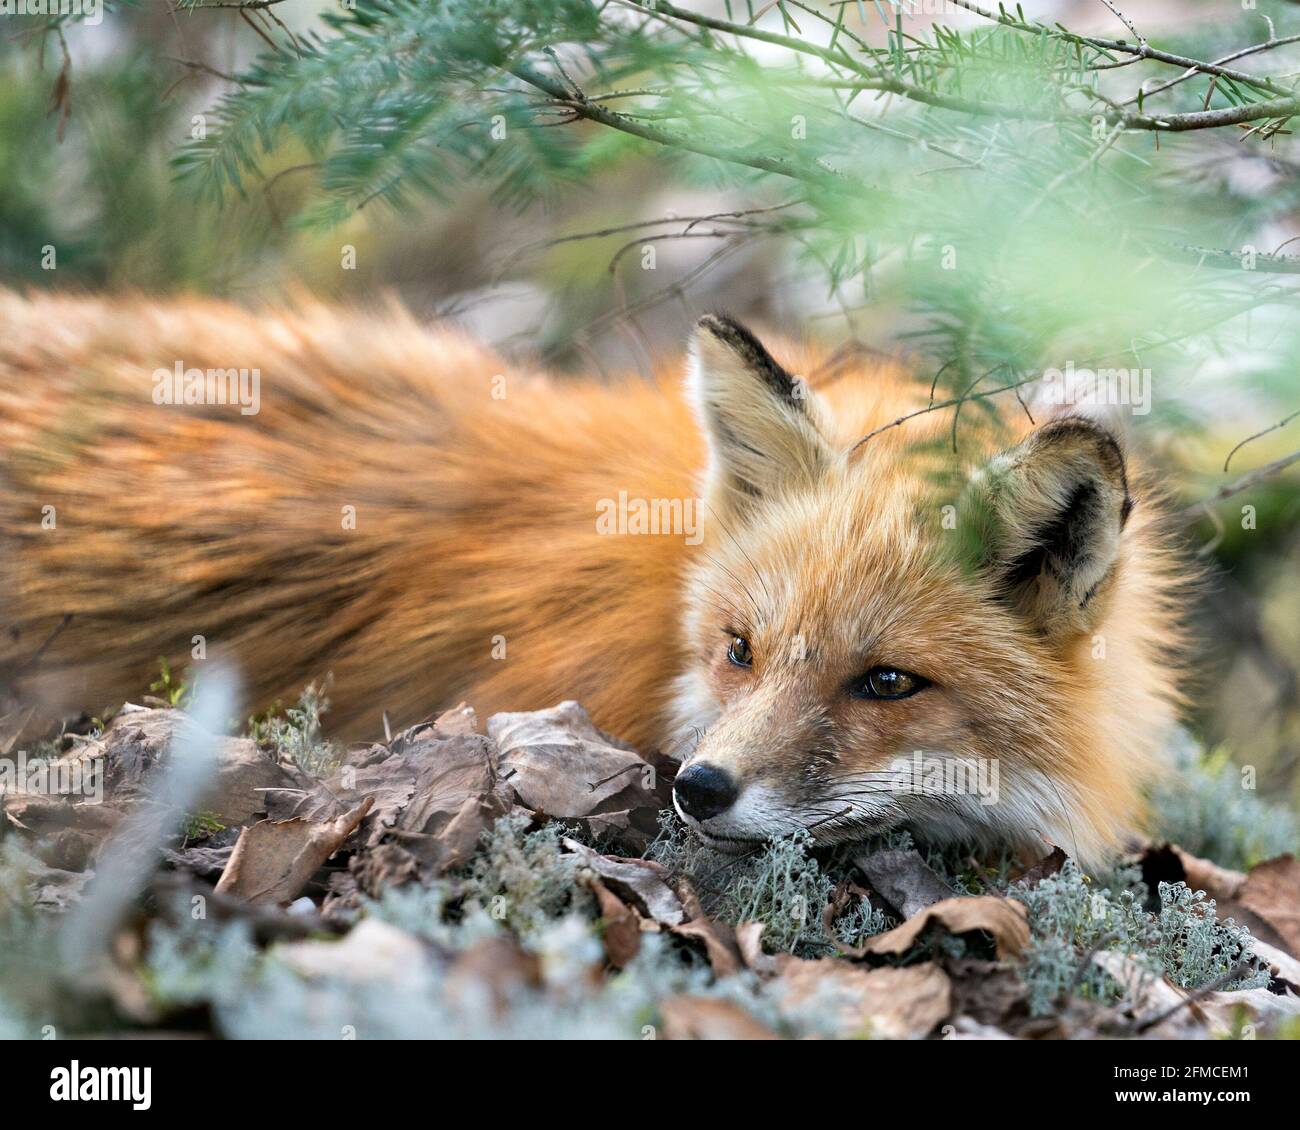 Vista ravvicinata della testa della volpe rossa attraverso rami di conifere nel suo ambiente e habitat. Immagine FOX. Immagine. Verticale. Foto. Colpo di testa. Foto Stock